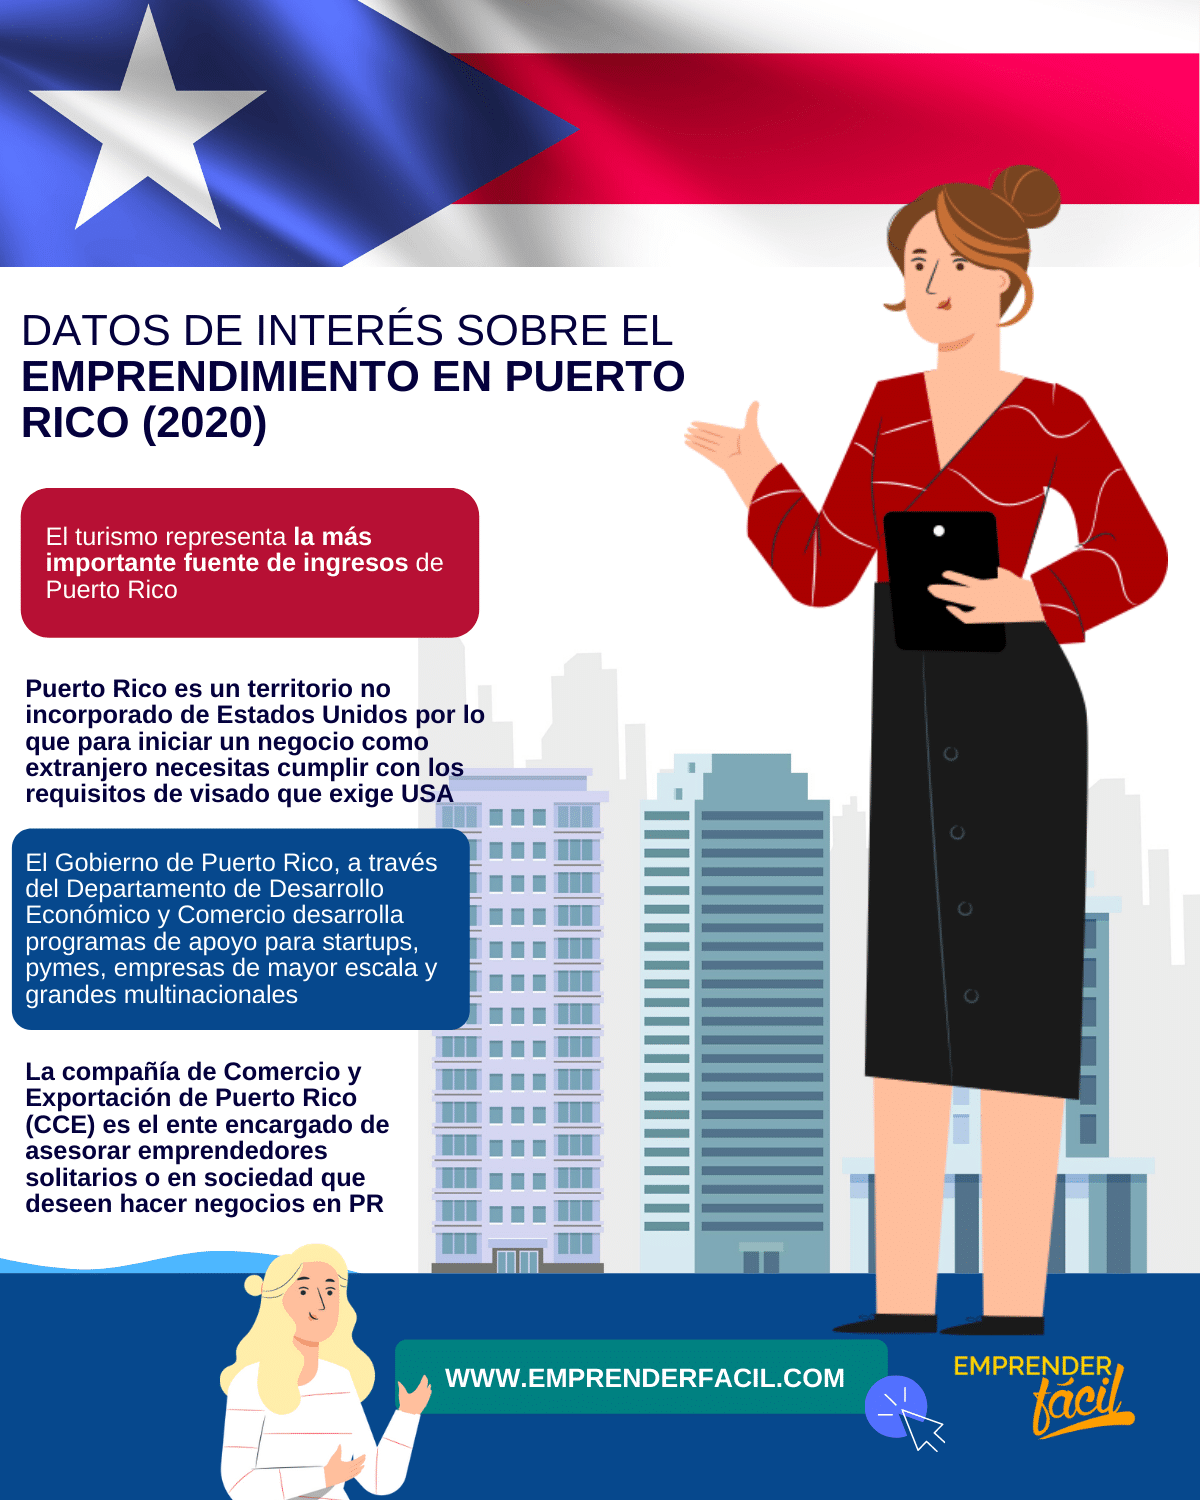 Datos de interés sobre el emprendimiento en Puerto Rico